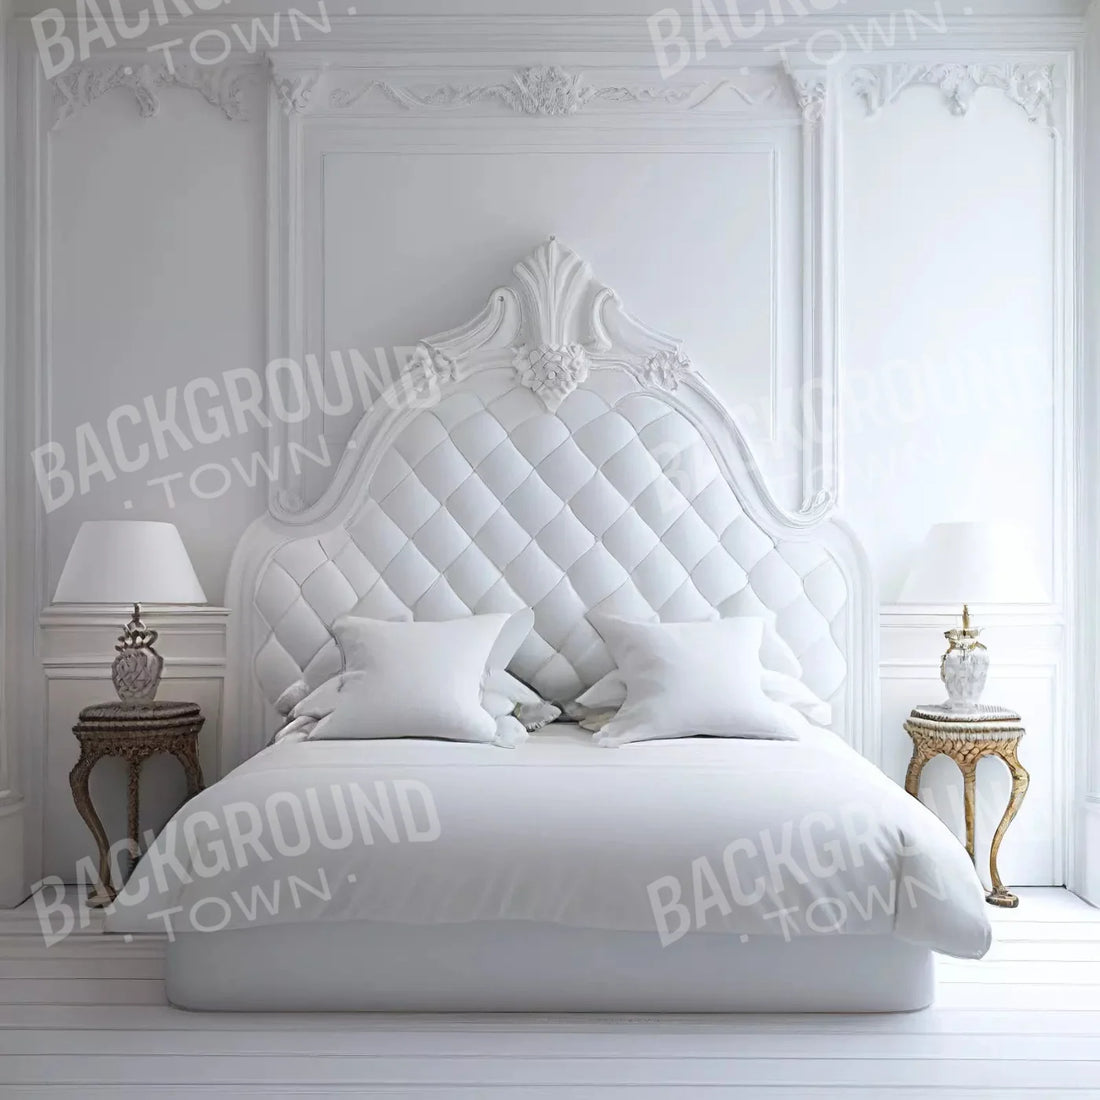 Bedroom High Key Ii 10X10 Ultracloth ( 120 X Inch ) Backdrop